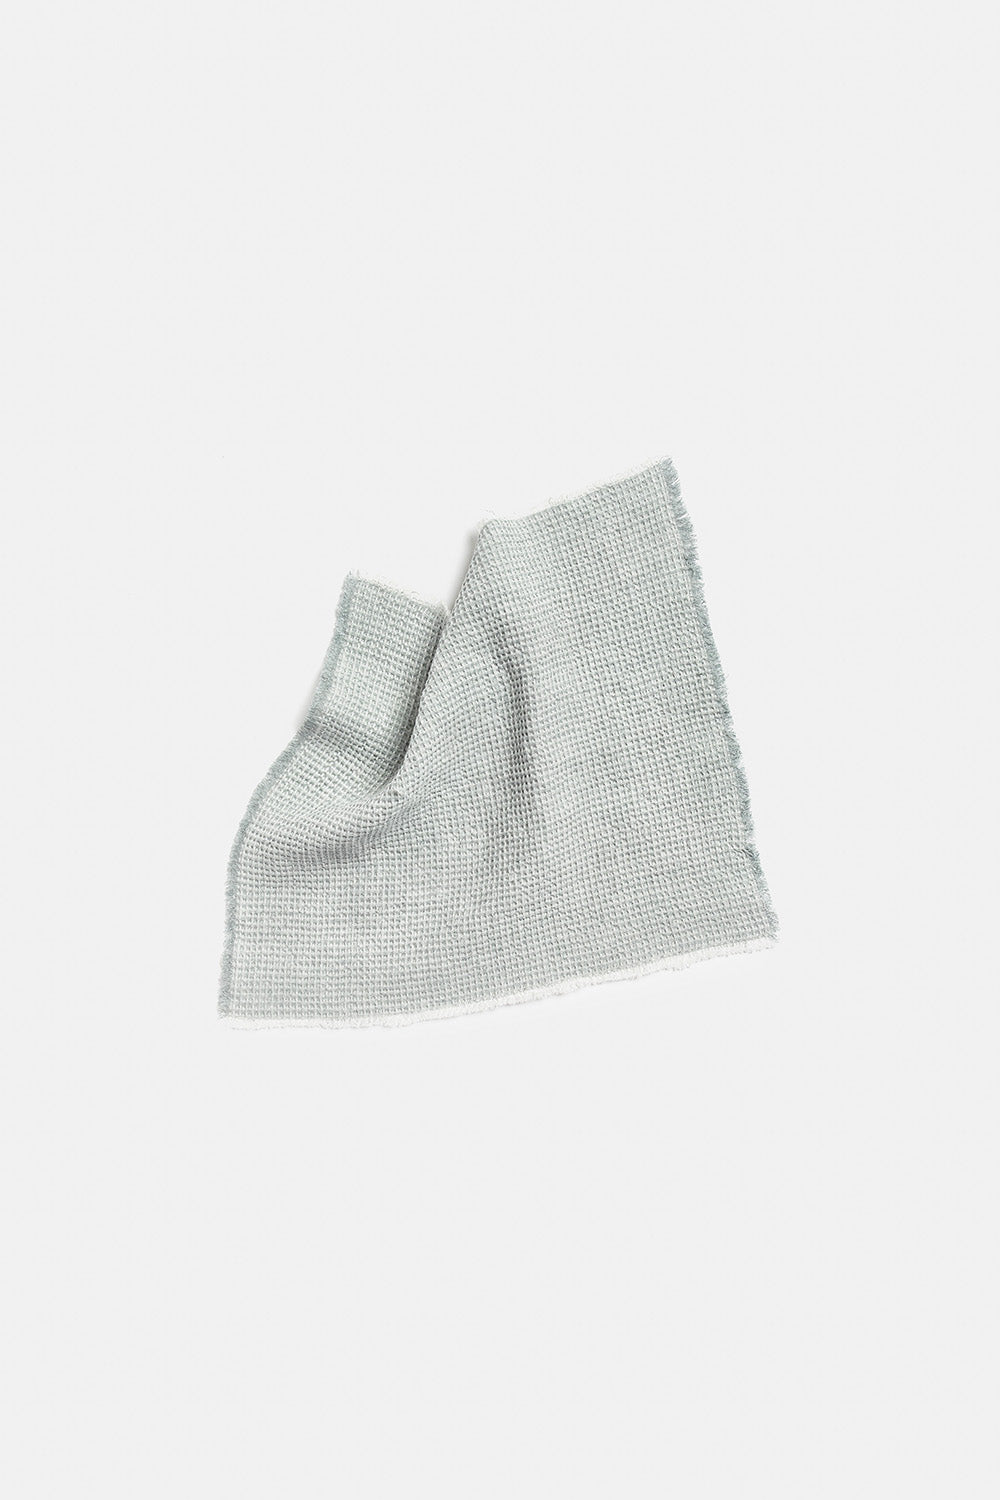 "Montecatini" towels in Pietra Grey